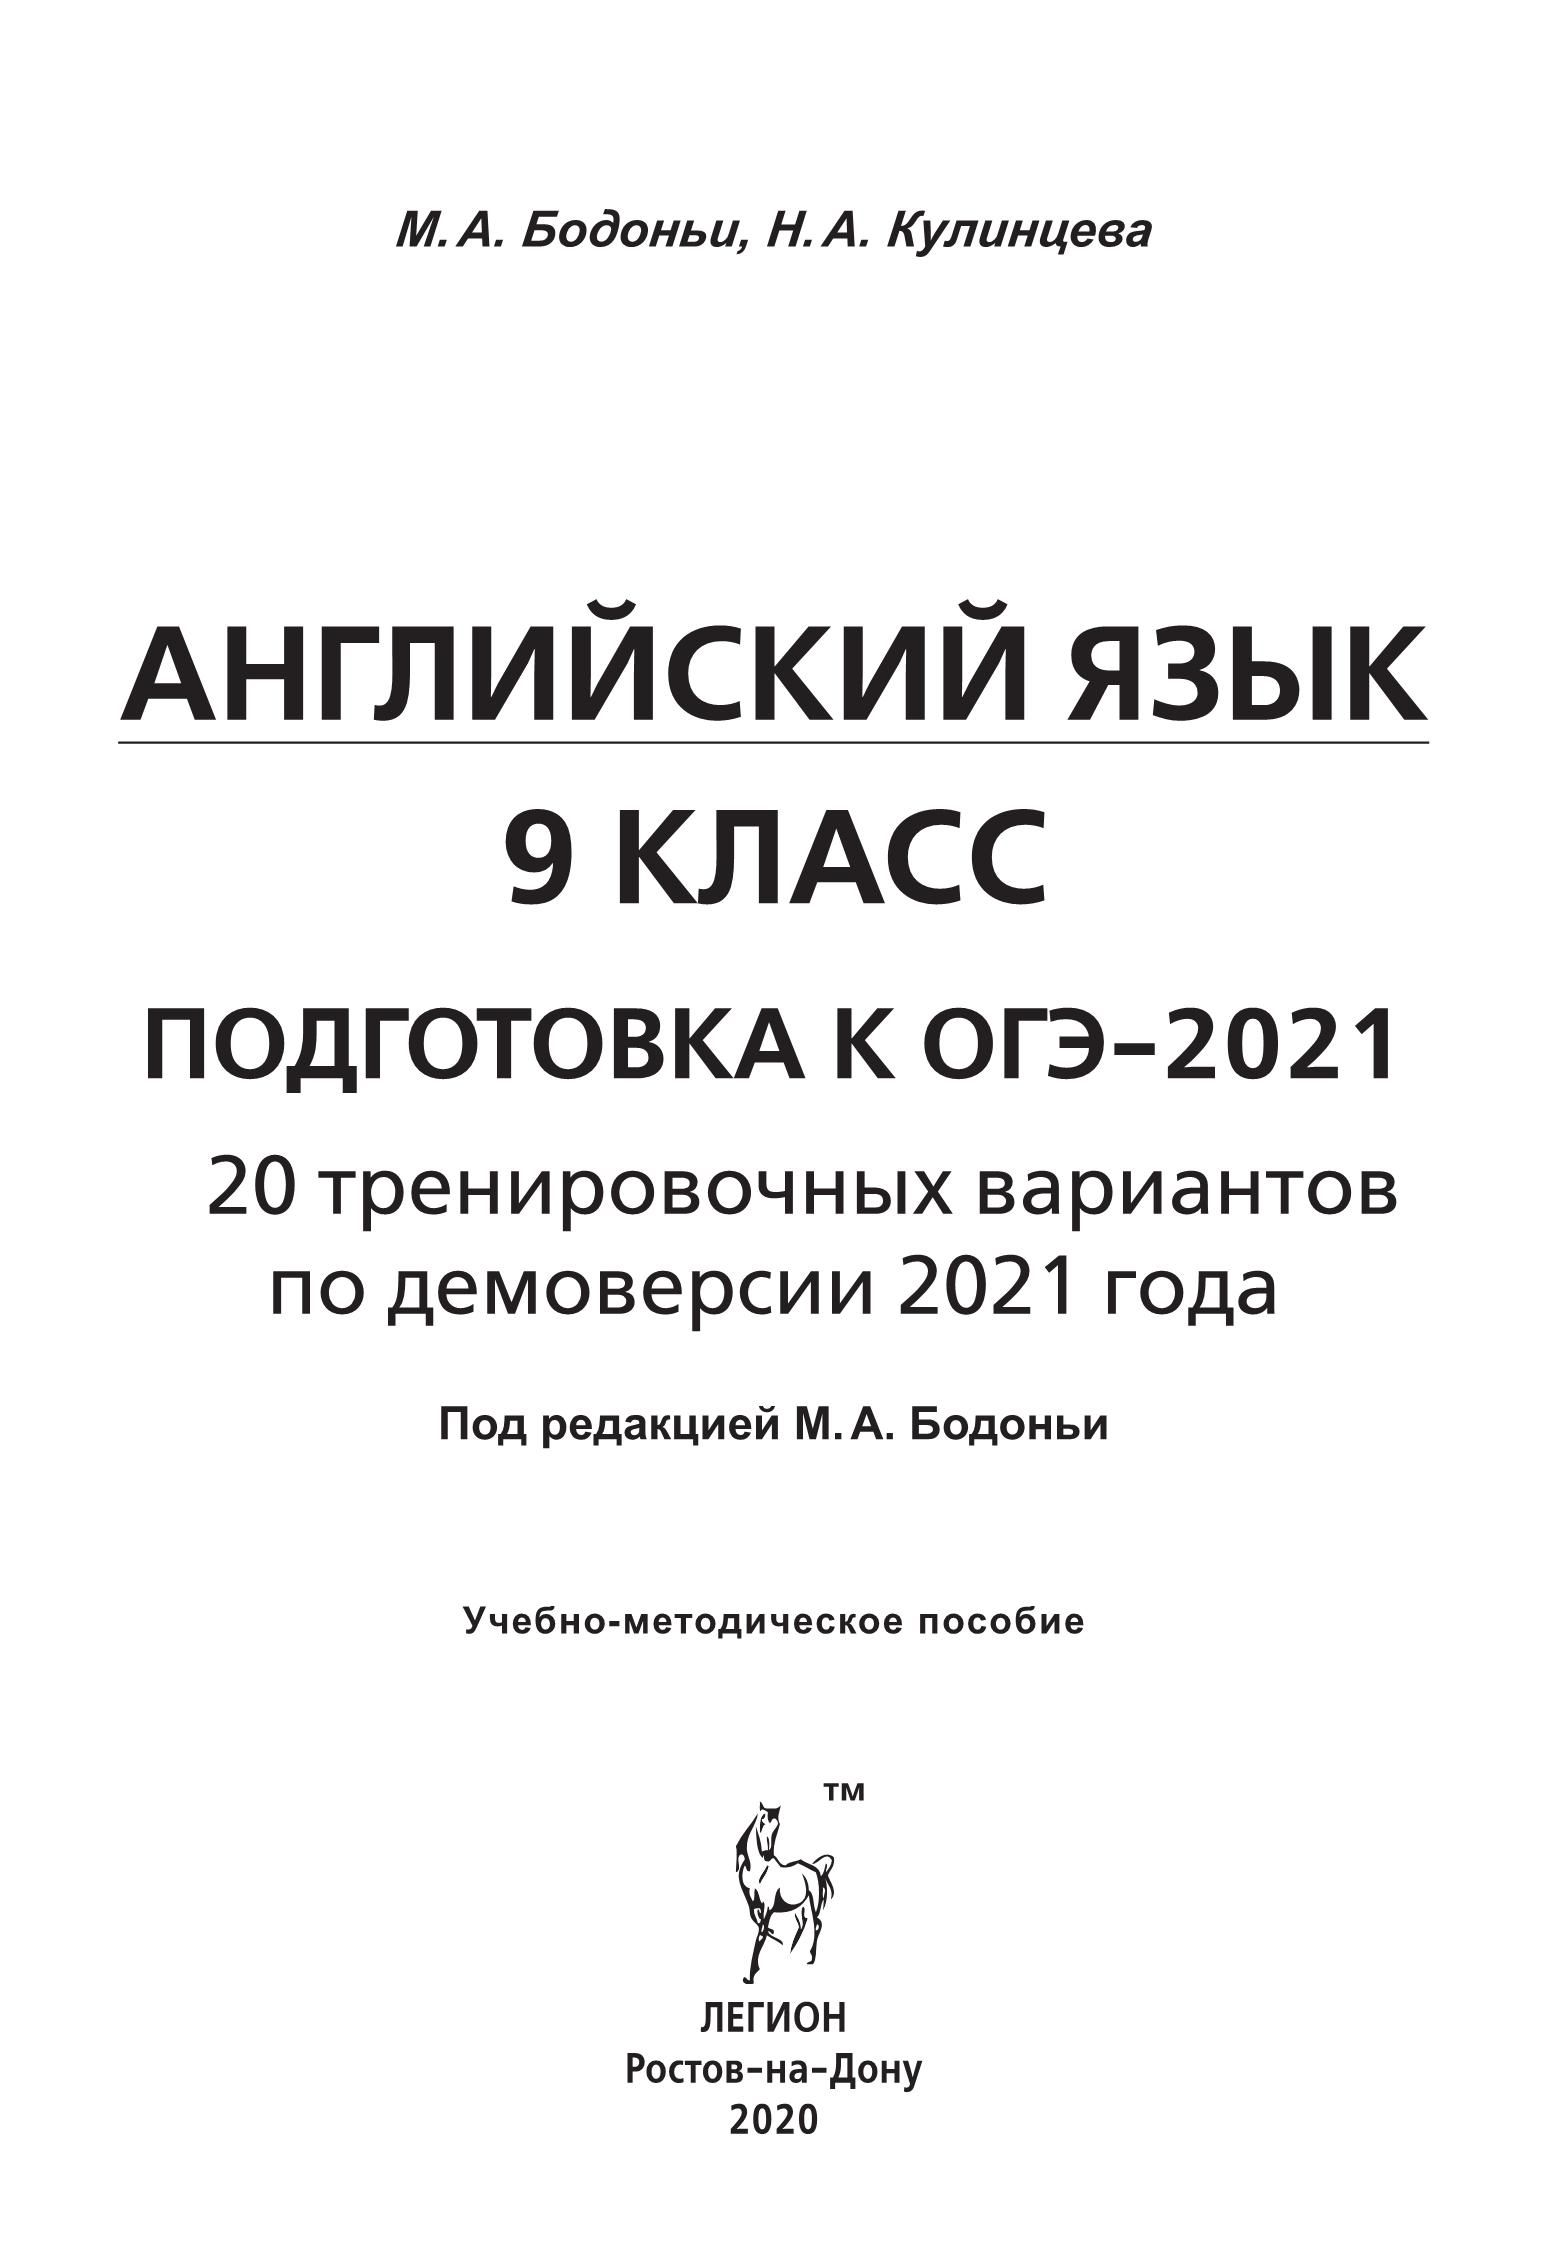 Английский язык. Подготовка к ОГЭ-2021. 9 класс. 20 тренир. вариантов по демоверсии 2021 года